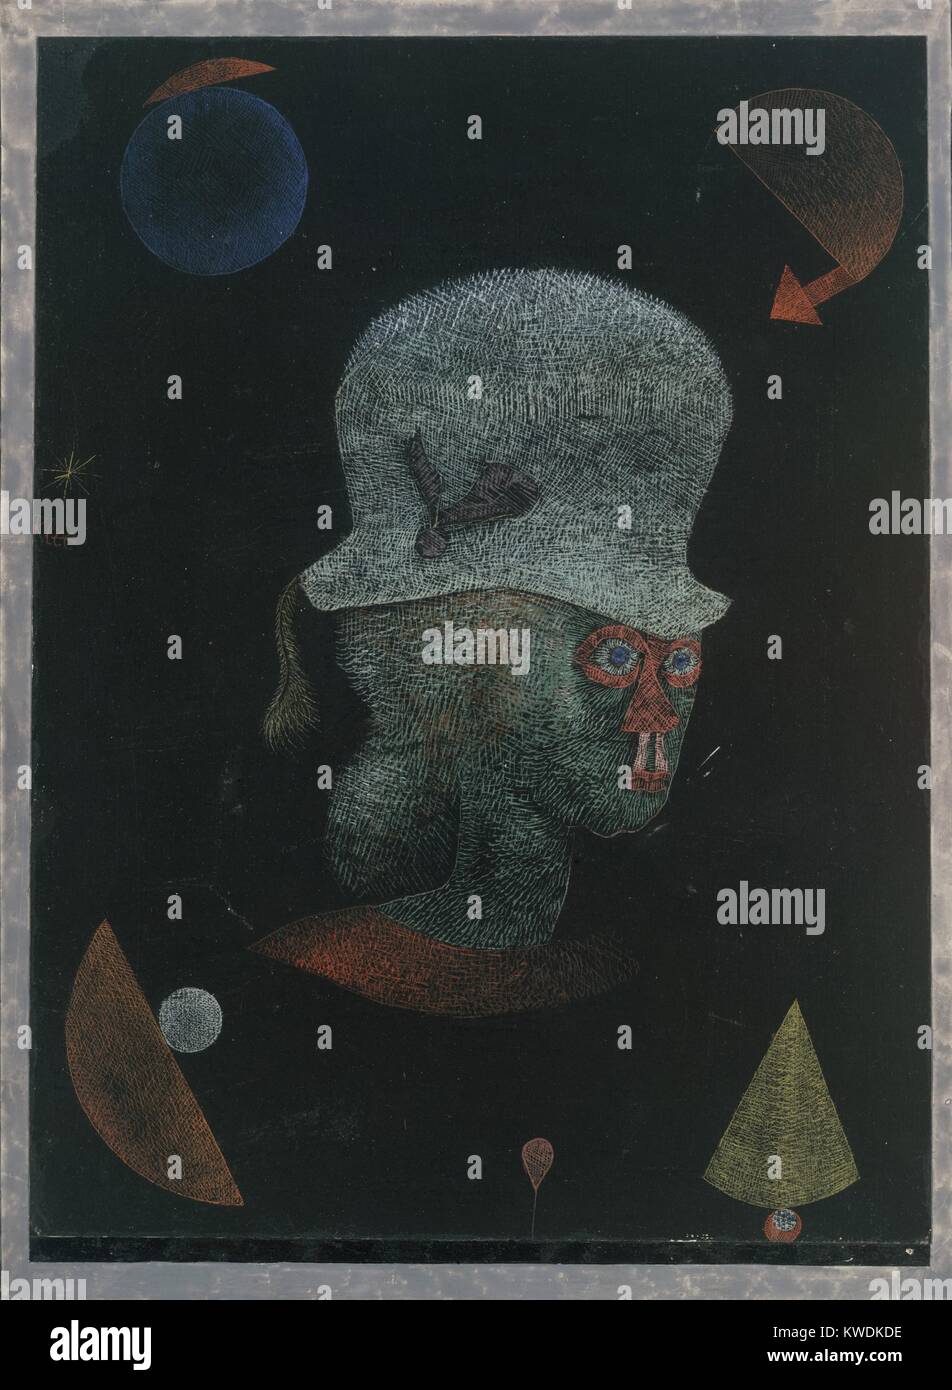 FANTASY retrato astrológico, por Paul Klee, 1924, Suiza, dibujo, Gouache y Tinta sobre Papel. Humanoide imaginario dibujado con la eclosión de colores blanco y negro en papel. En las esquinas son incubados representaciones de formas geométricas compuestas (BSLOC 2017 7 24) Foto de stock